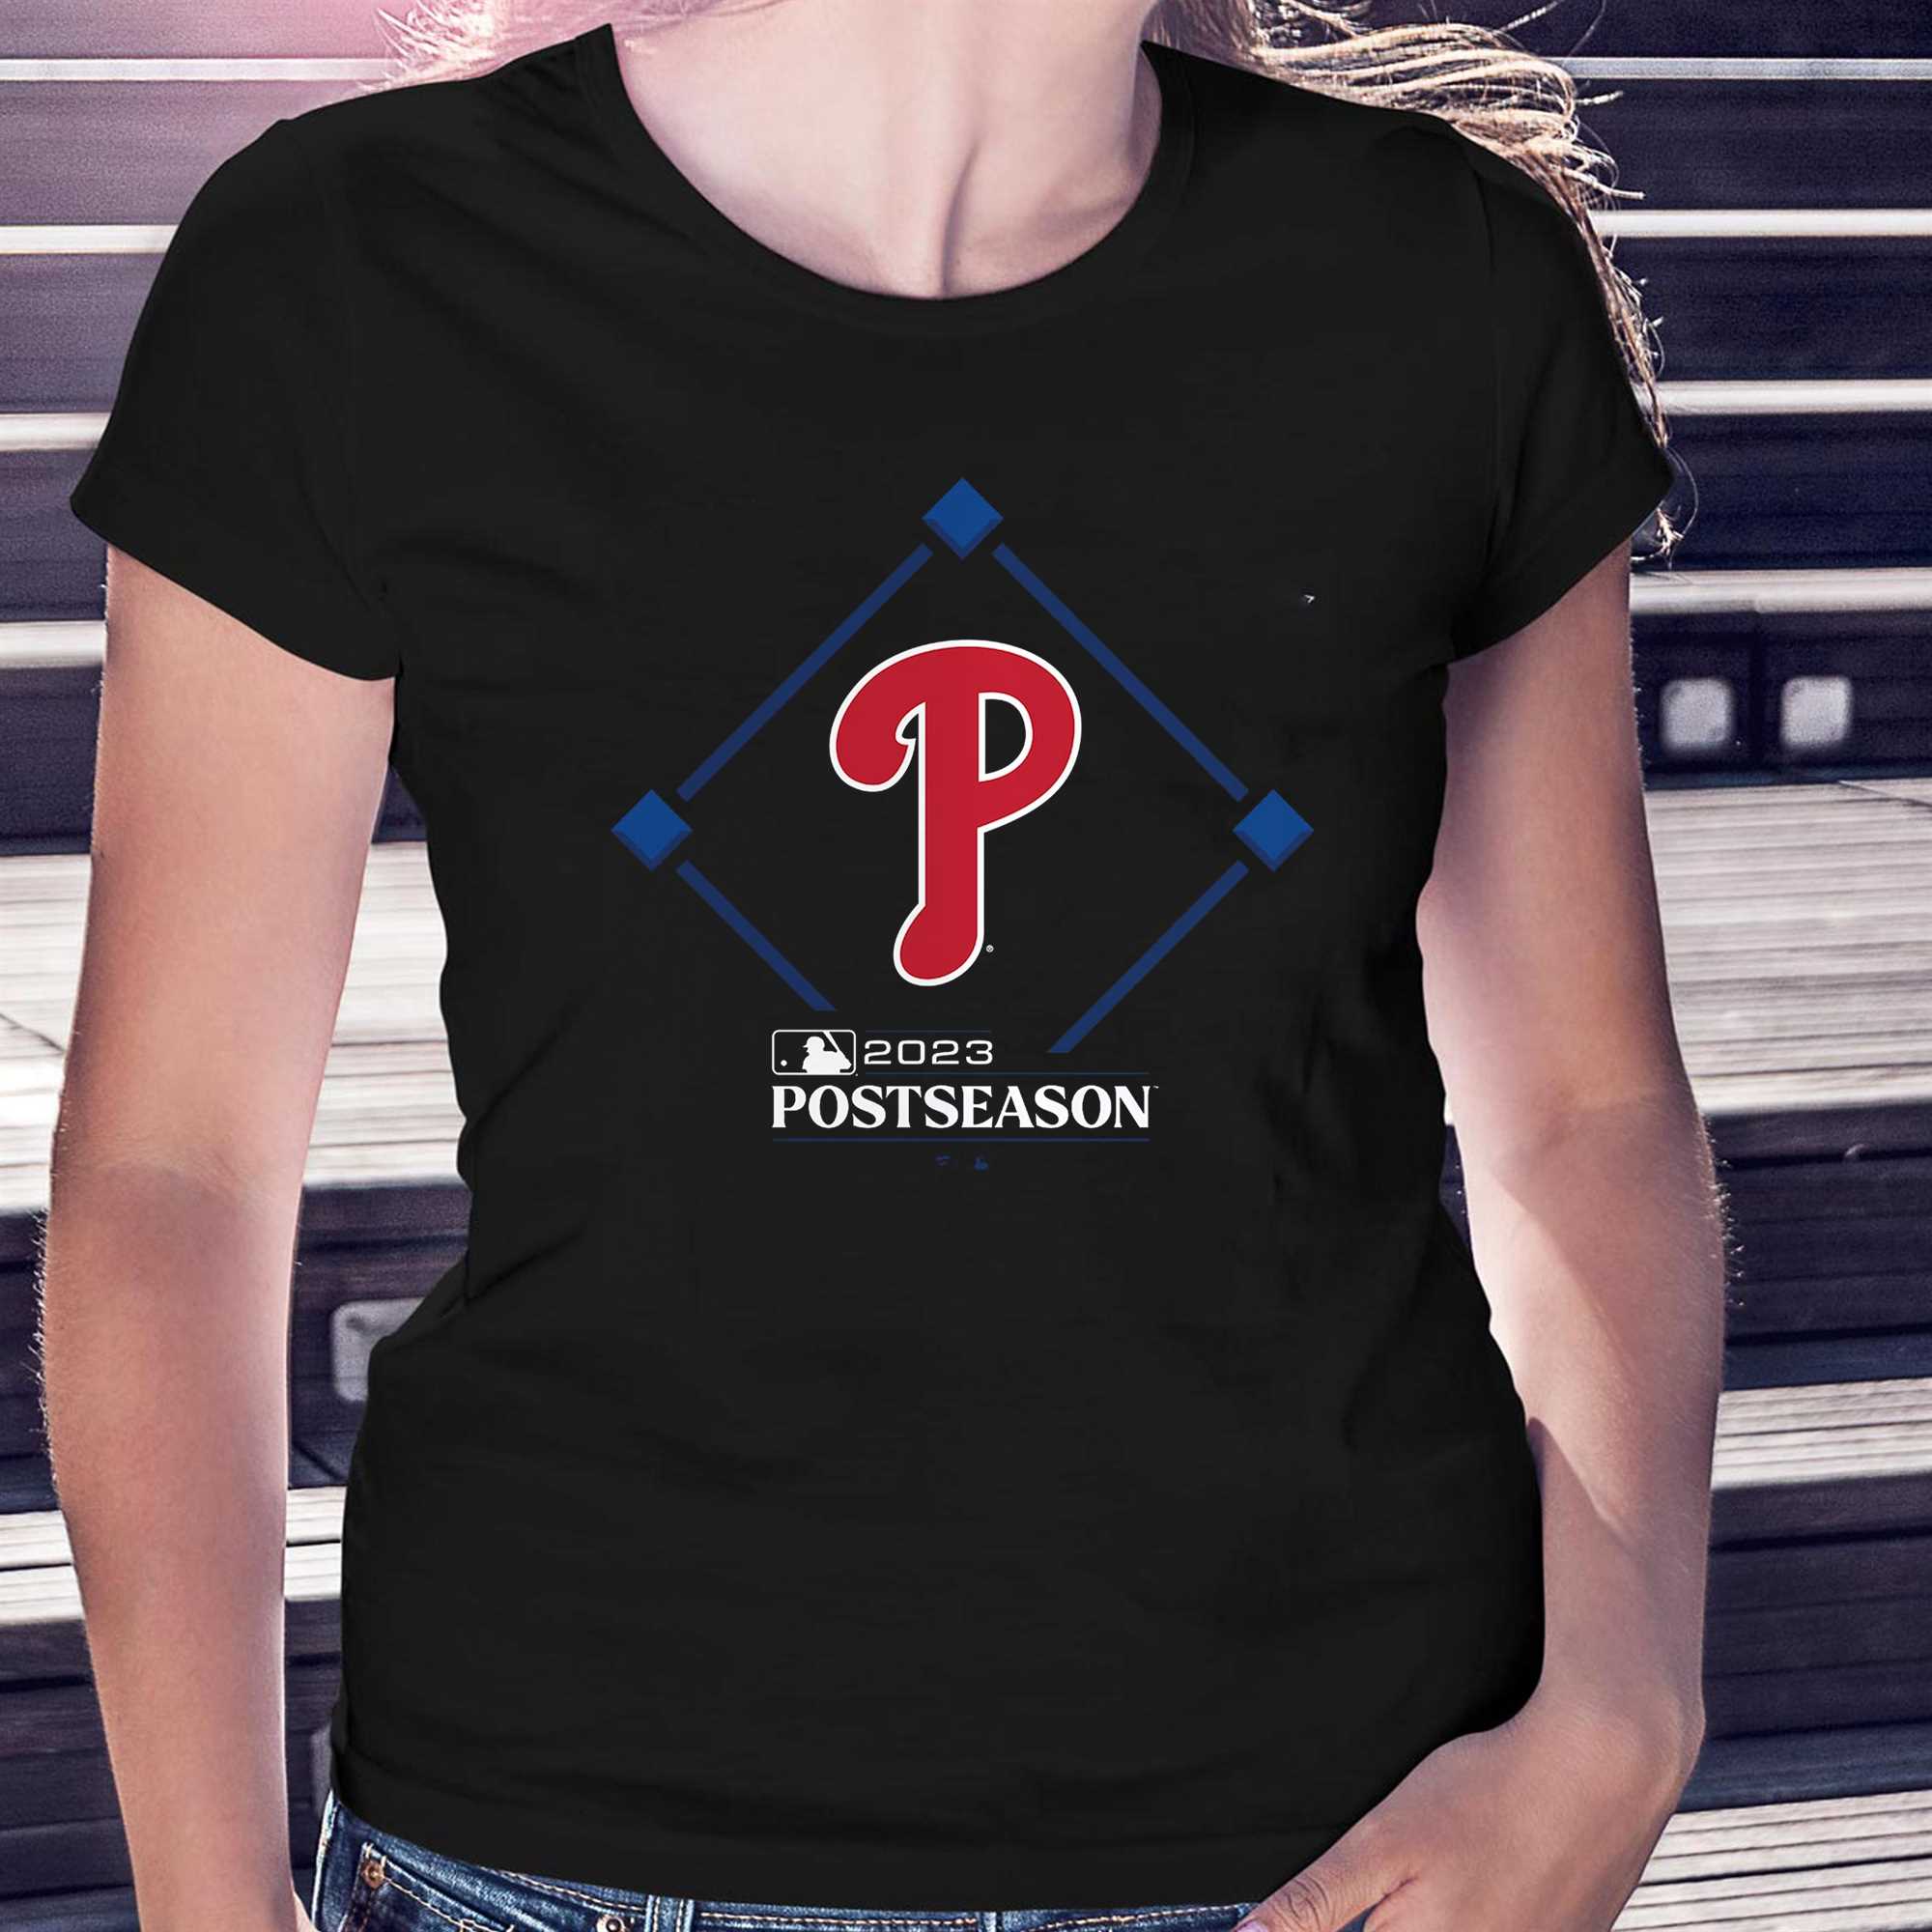 Take October Playoffs Postseason 2023 Philadelphia Phillies T-Shirt -  Binteez